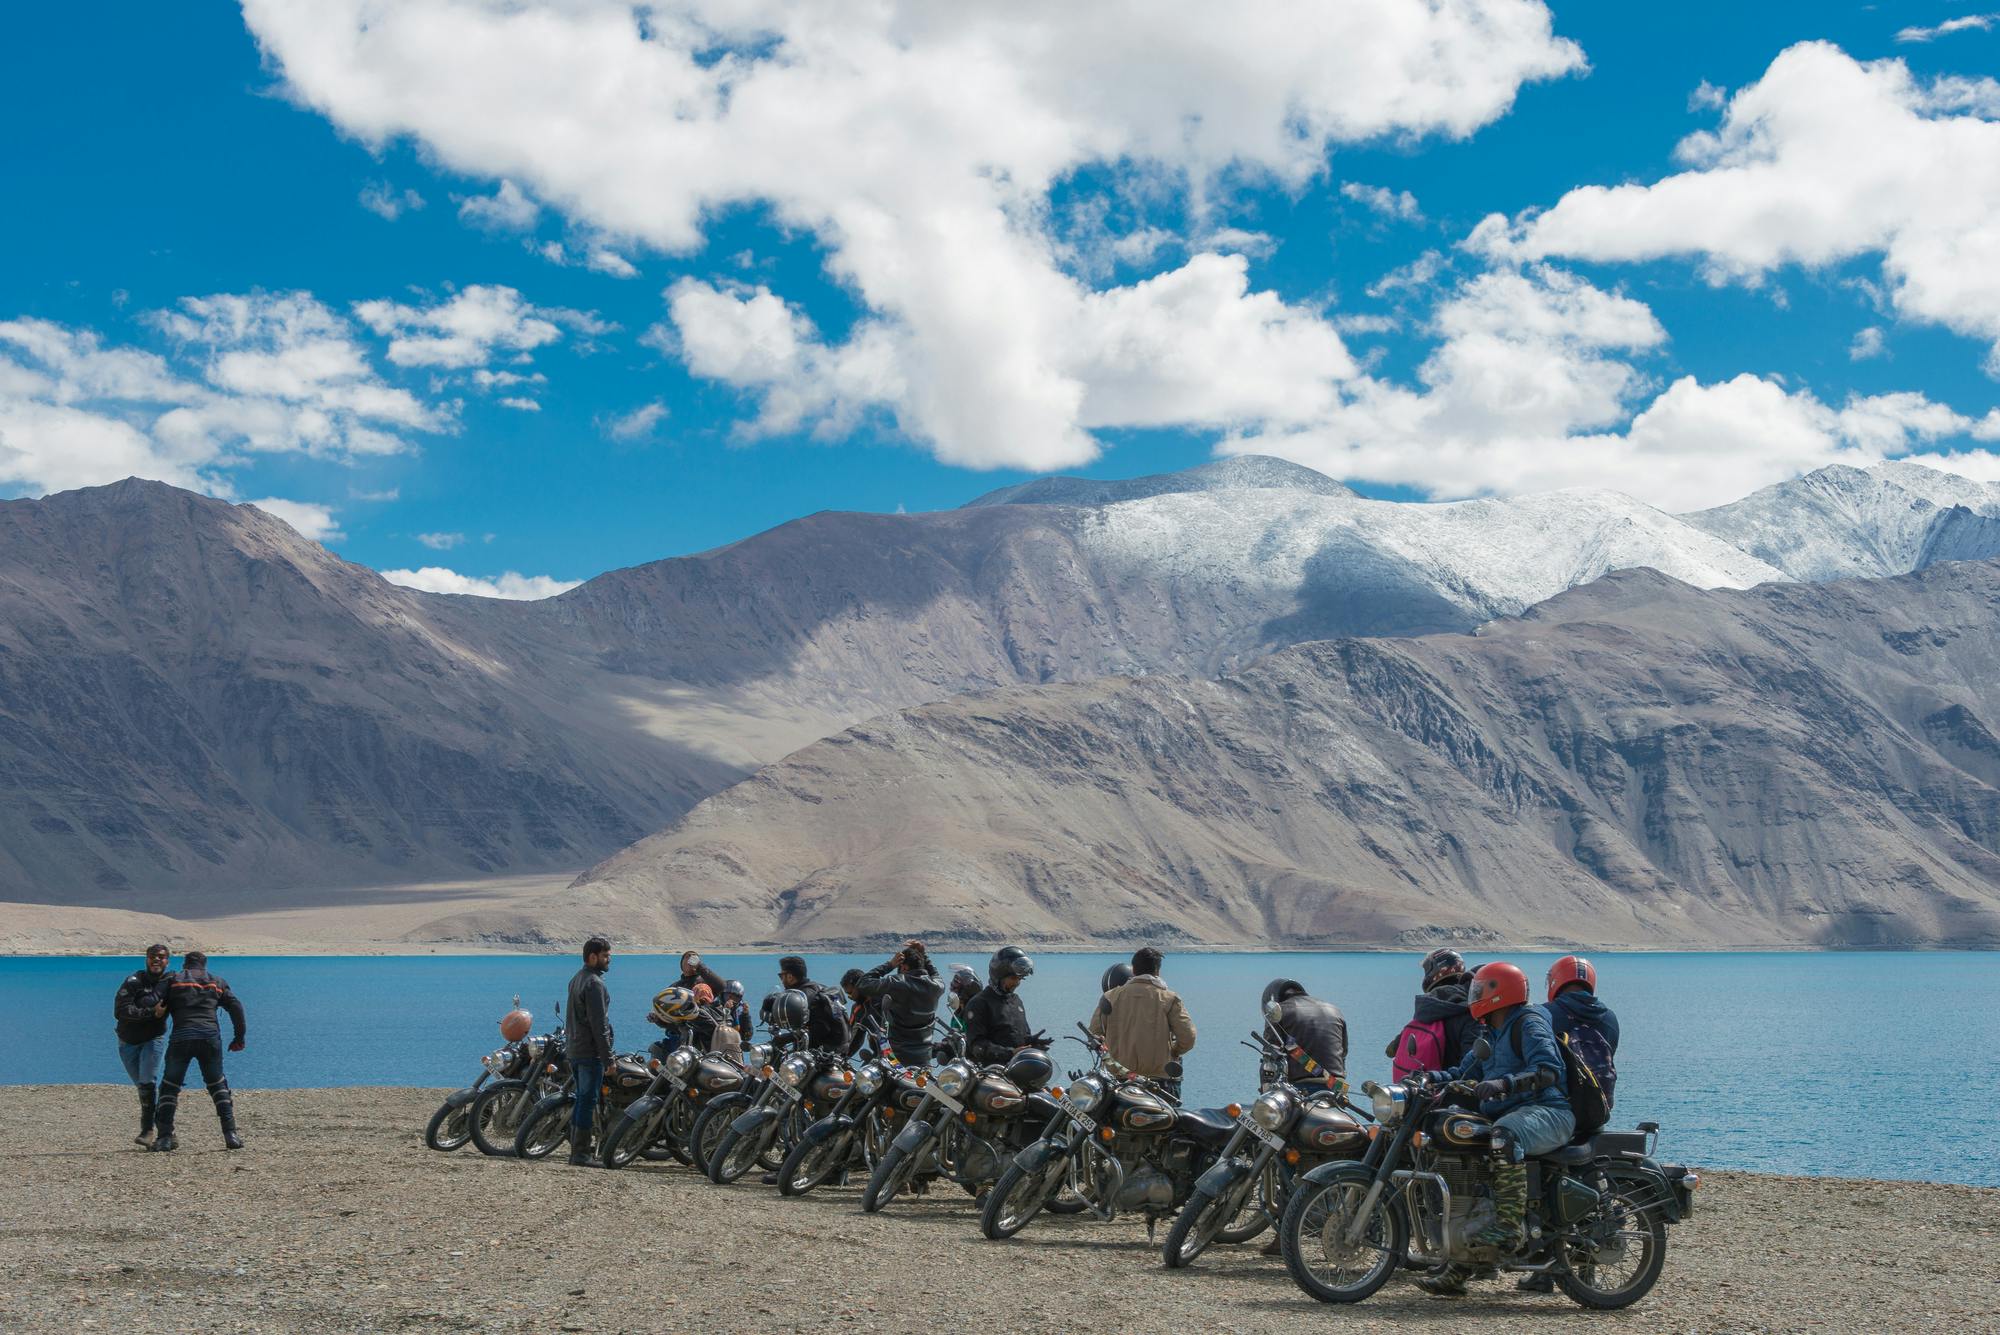 Escape Ladakh on a Motorcycle Tour